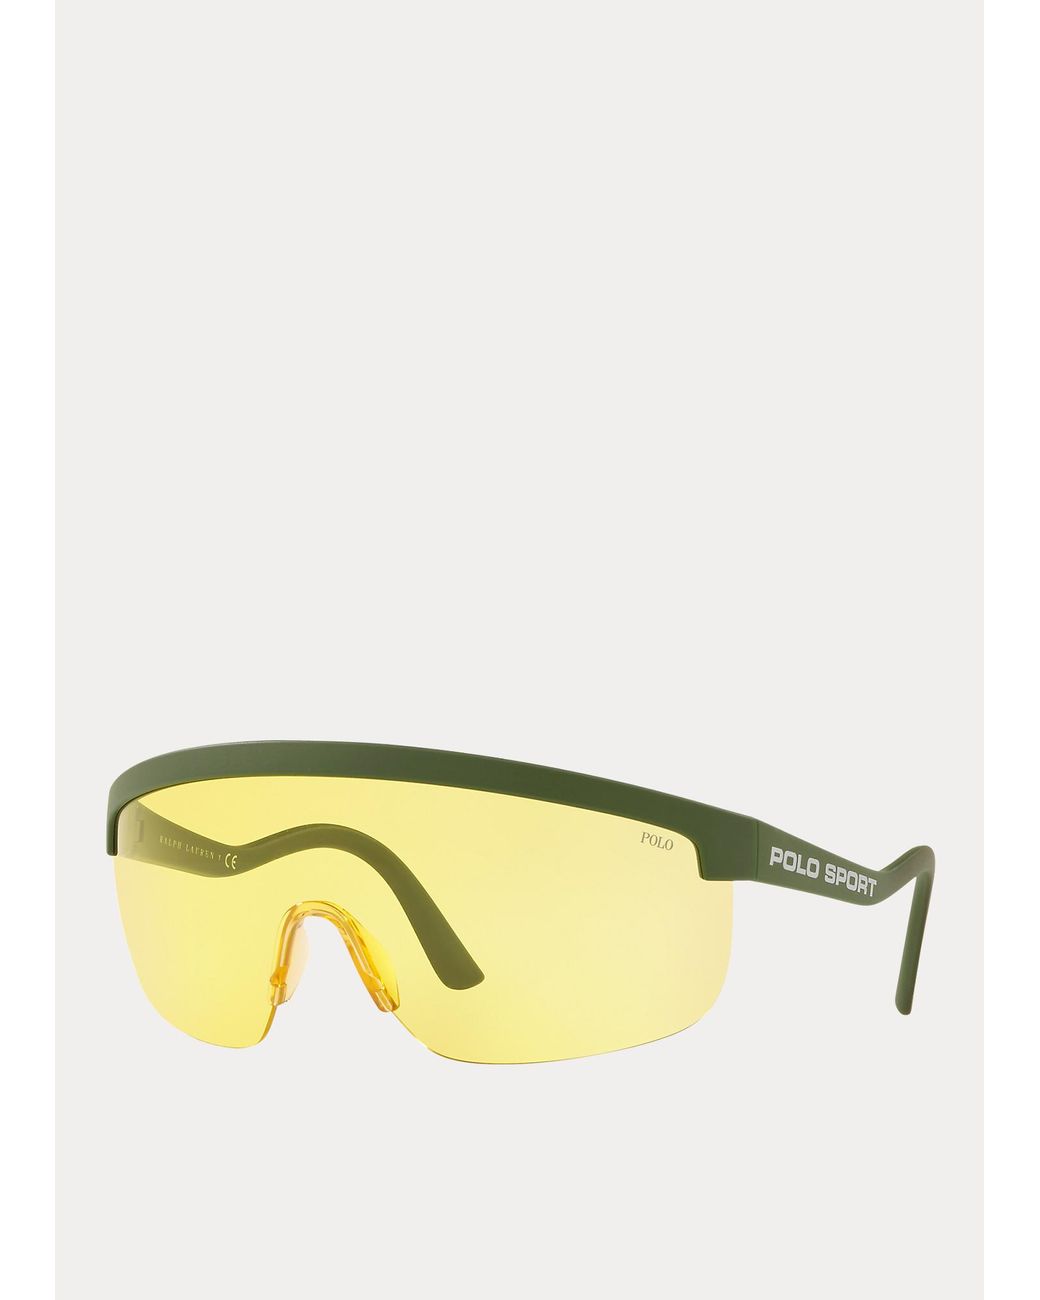 Polo Ralph Lauren Polo Sport Shield Sunglasses for Men | Lyst UK